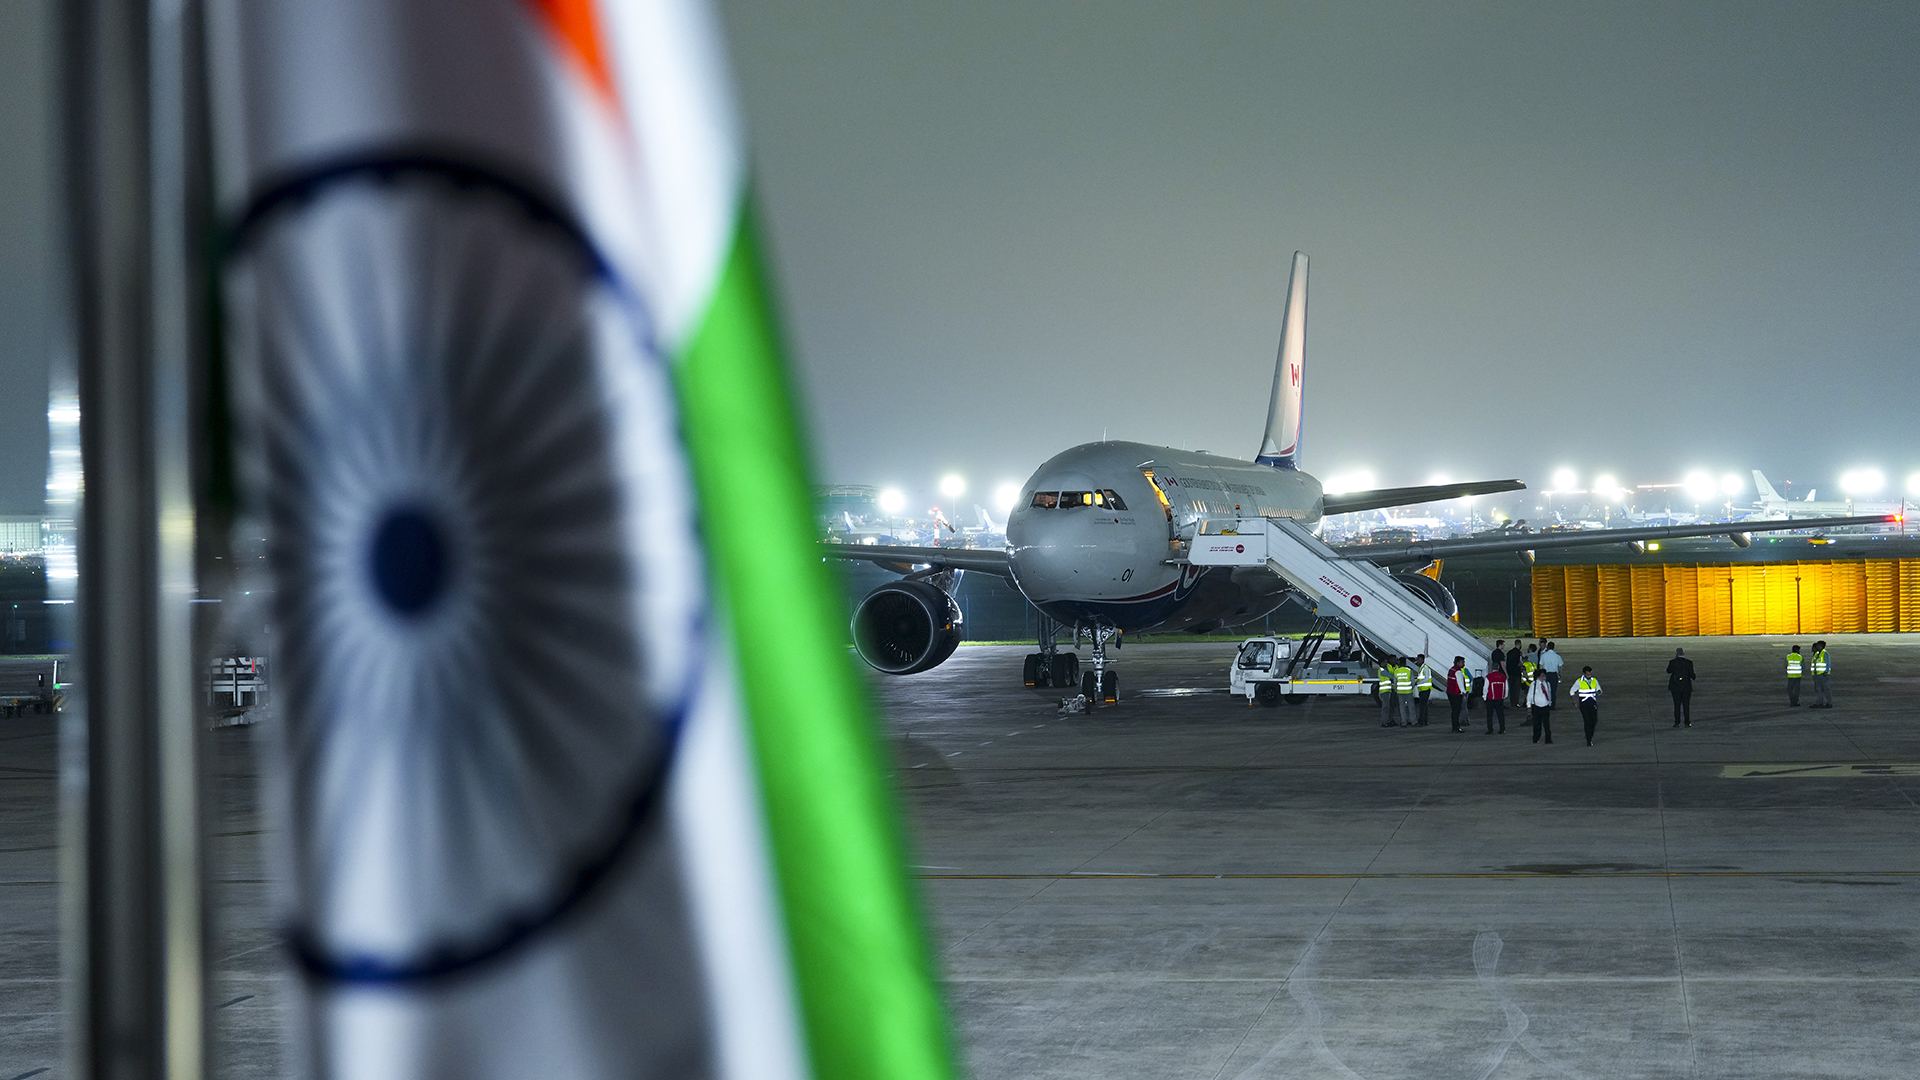 Le retour du premier ministre Justin Trudeau au Canada après le sommet du G20 en Inde a été retardé en raison de problèmes avec son avion.